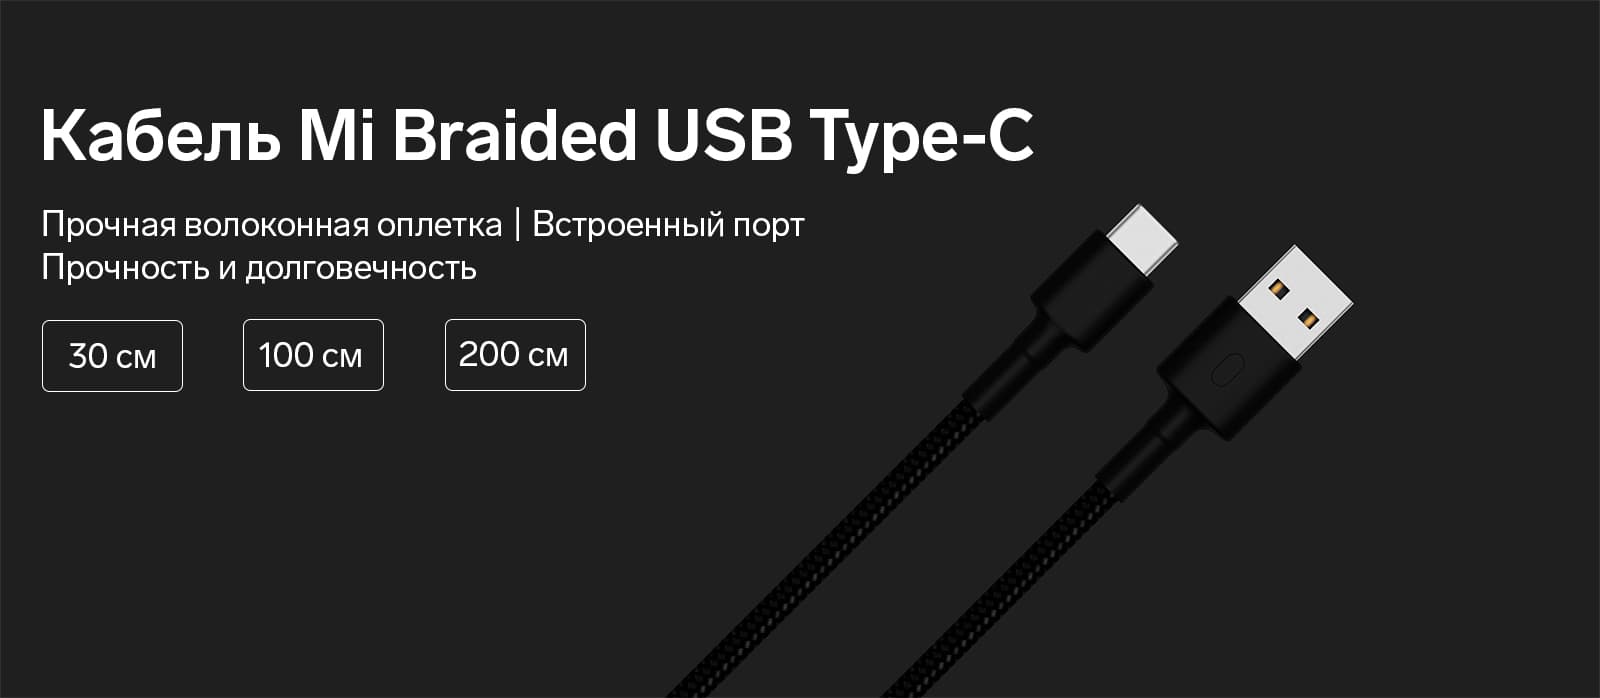 Кабель Mi Braided USB Type-C